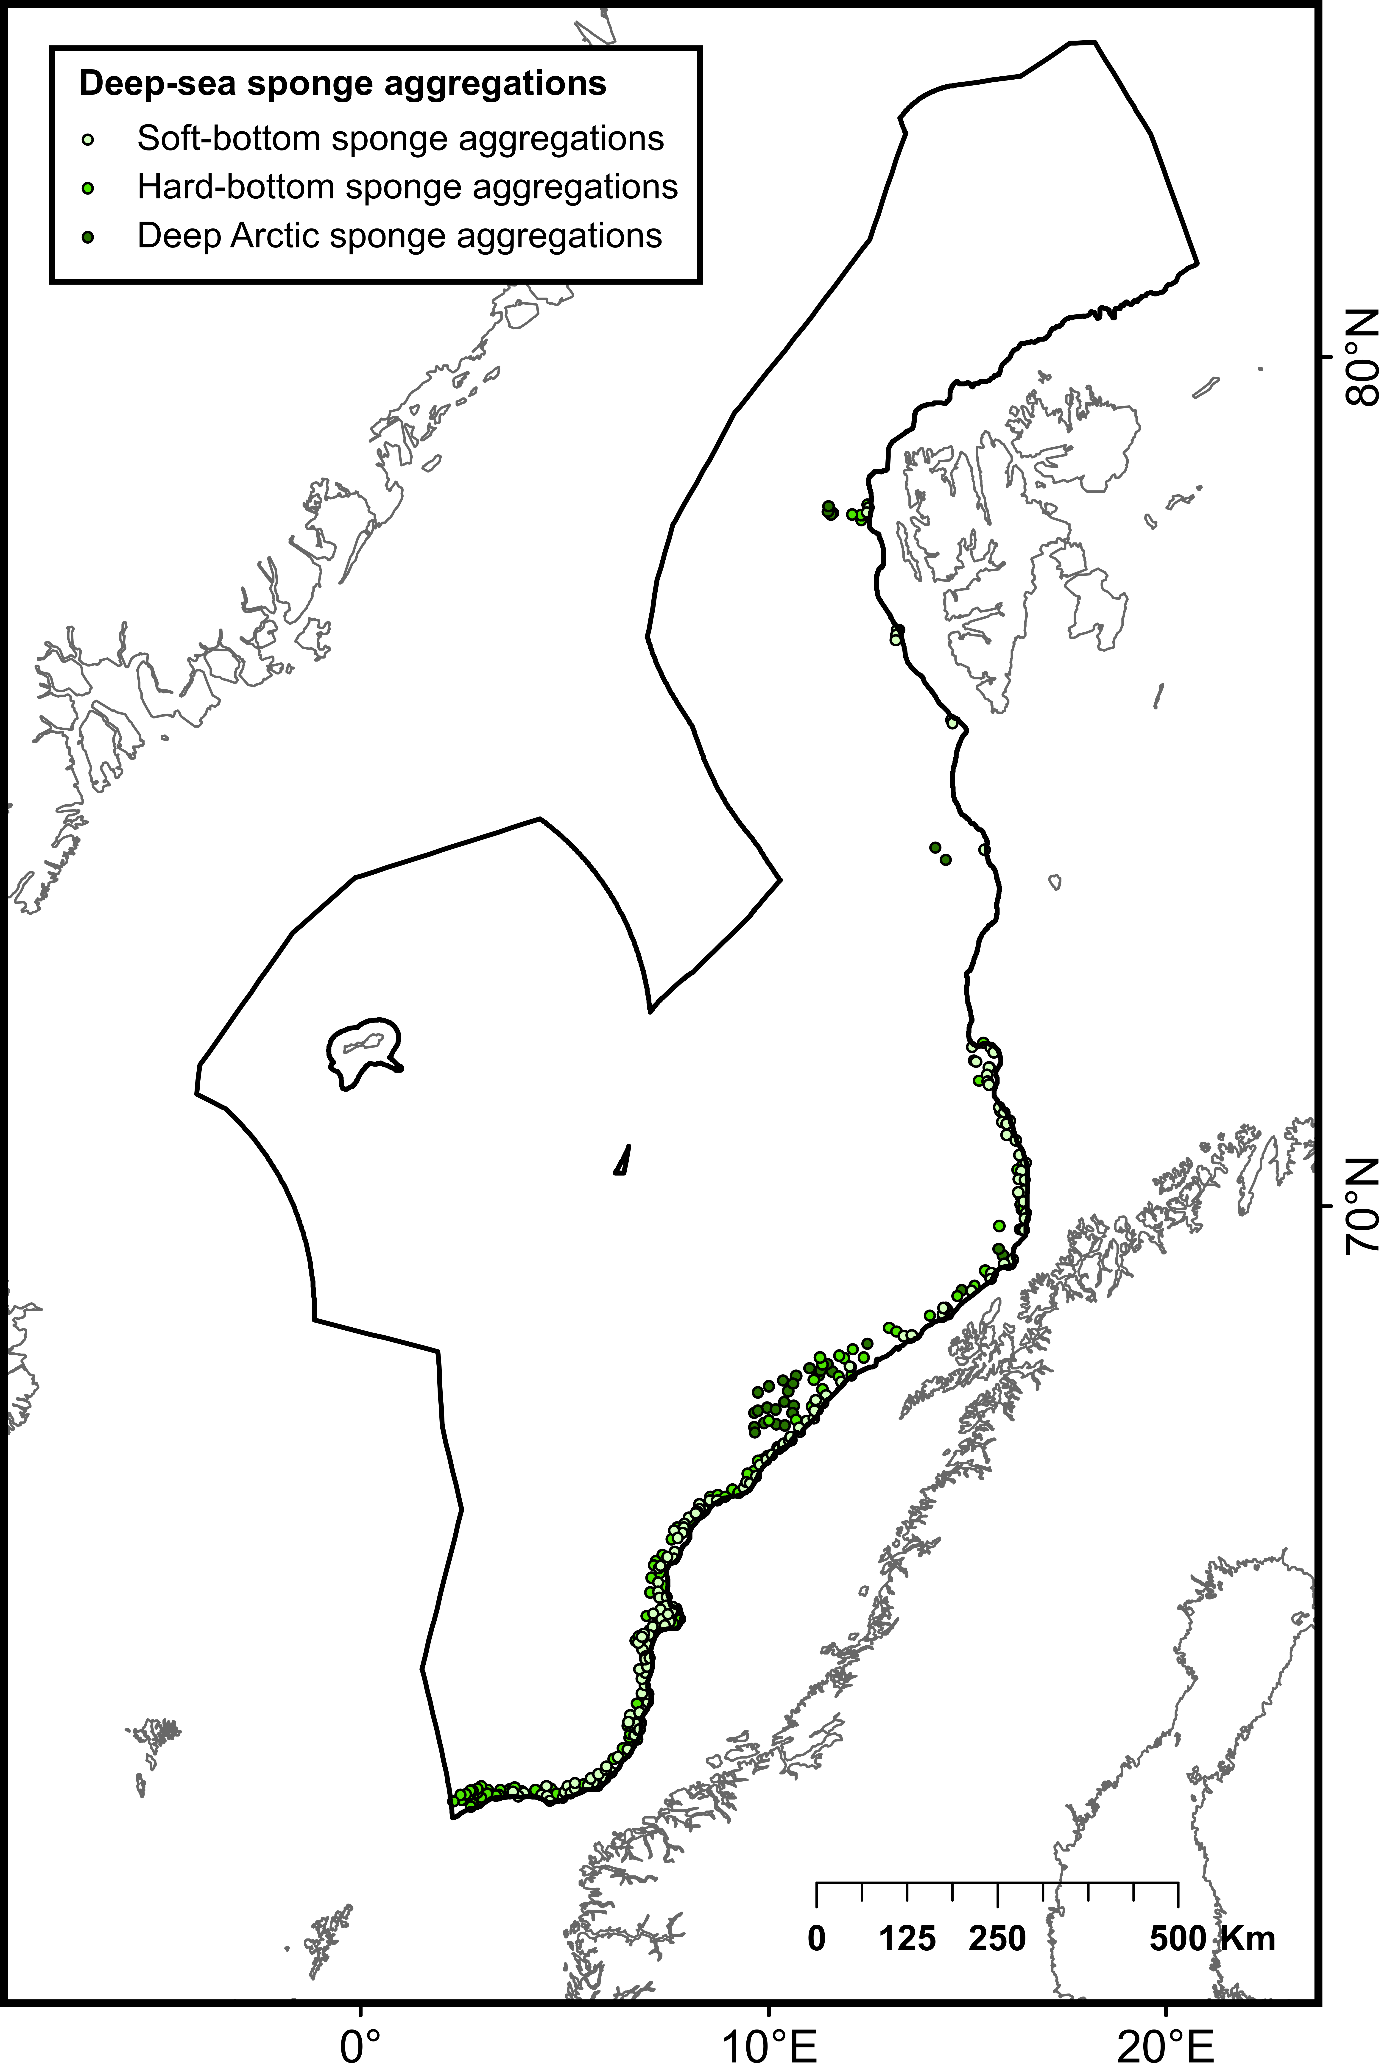 Circels represent Deep-sea sponge aggregations (from top to bottom): Soft-bottom sponge aggregations (white circles), Hard-bottom sponge aggregations (light green circles) and Deep Arctic sponge aggretations (dark green circles)